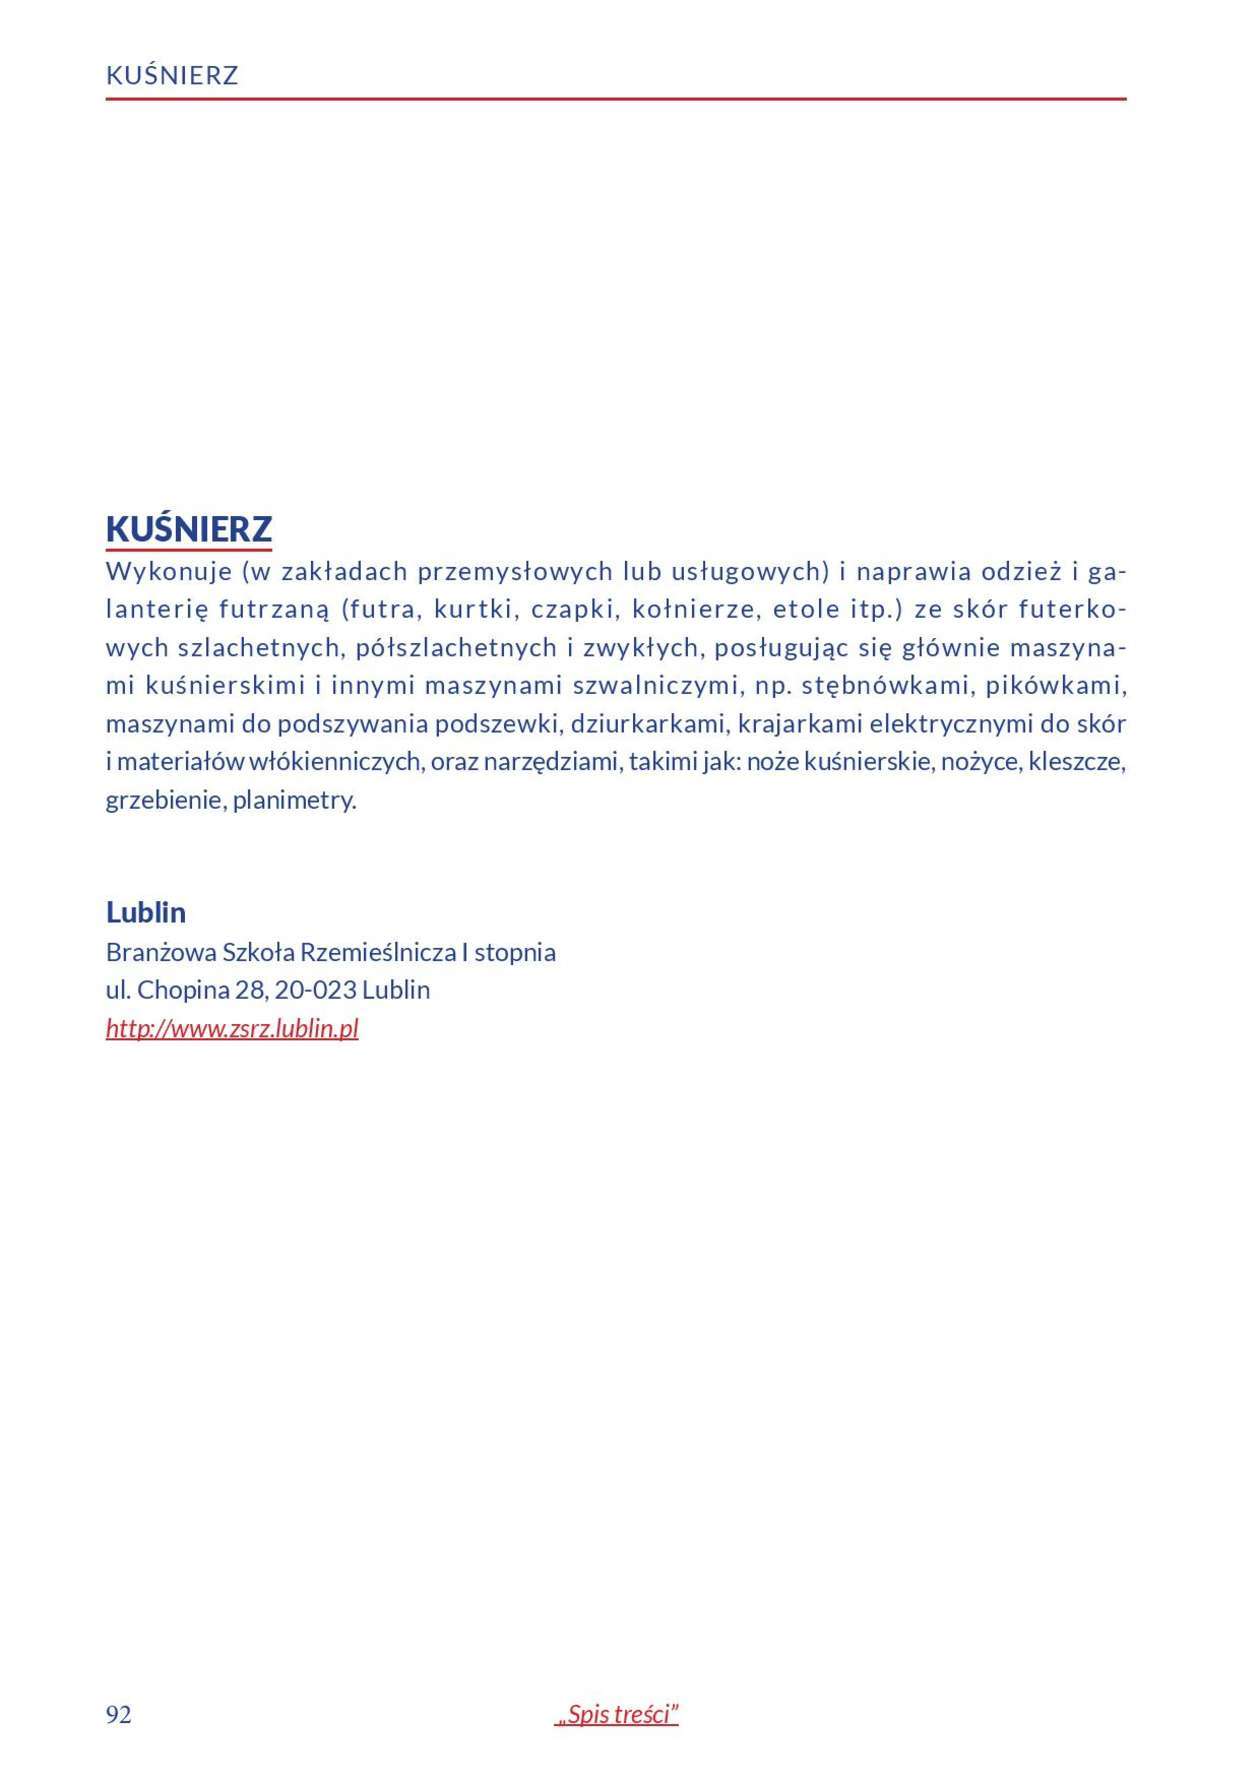  Informator o zawodach 2018/2019 w woj. lubelskim. Część 1 (zdjęcie 90) - Autor: Kuratorium Oświaty w Lublinie